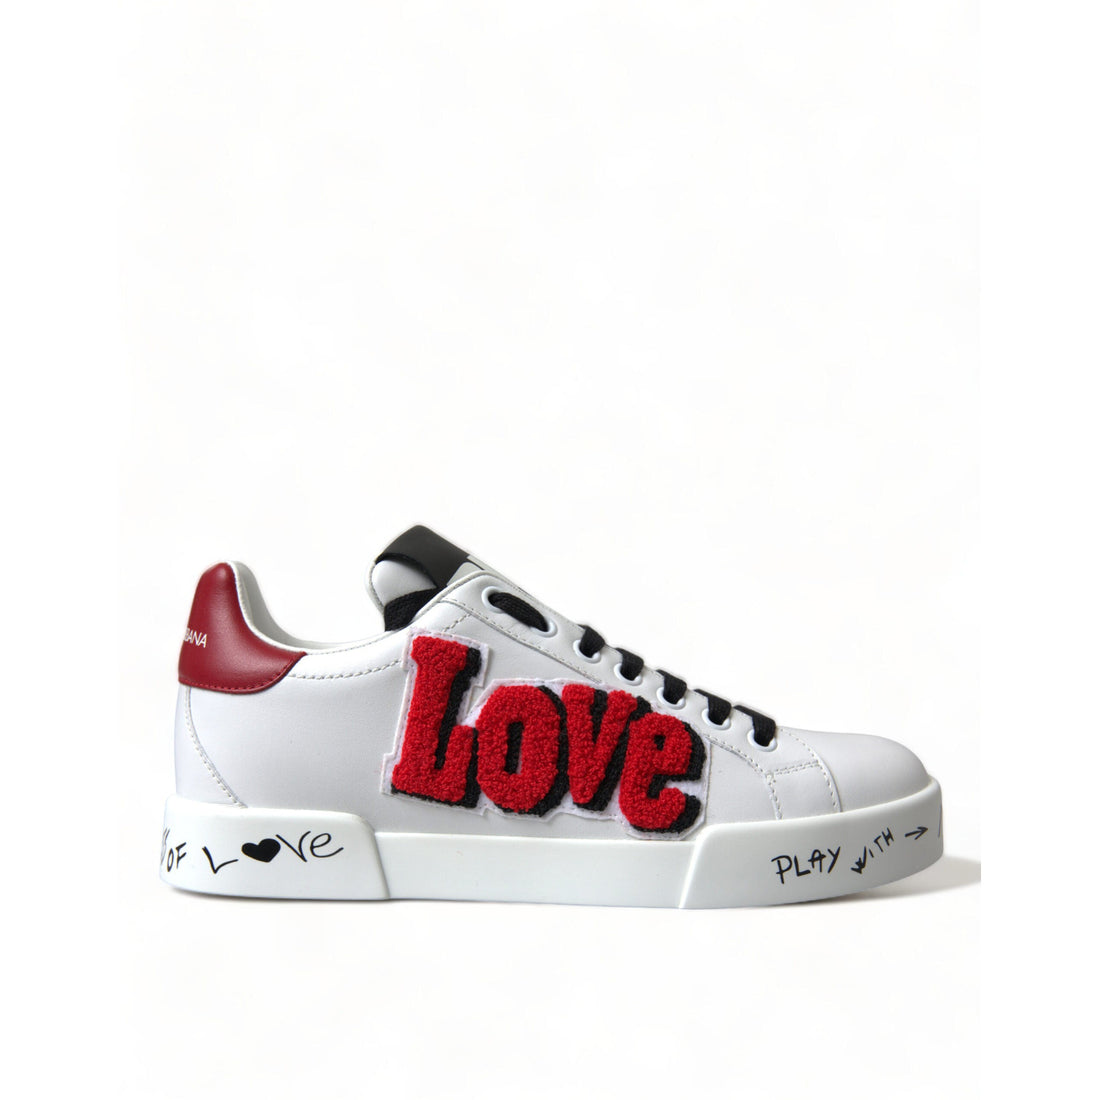 Dolce & Gabbana Chic White Portofino Leather Sneakers